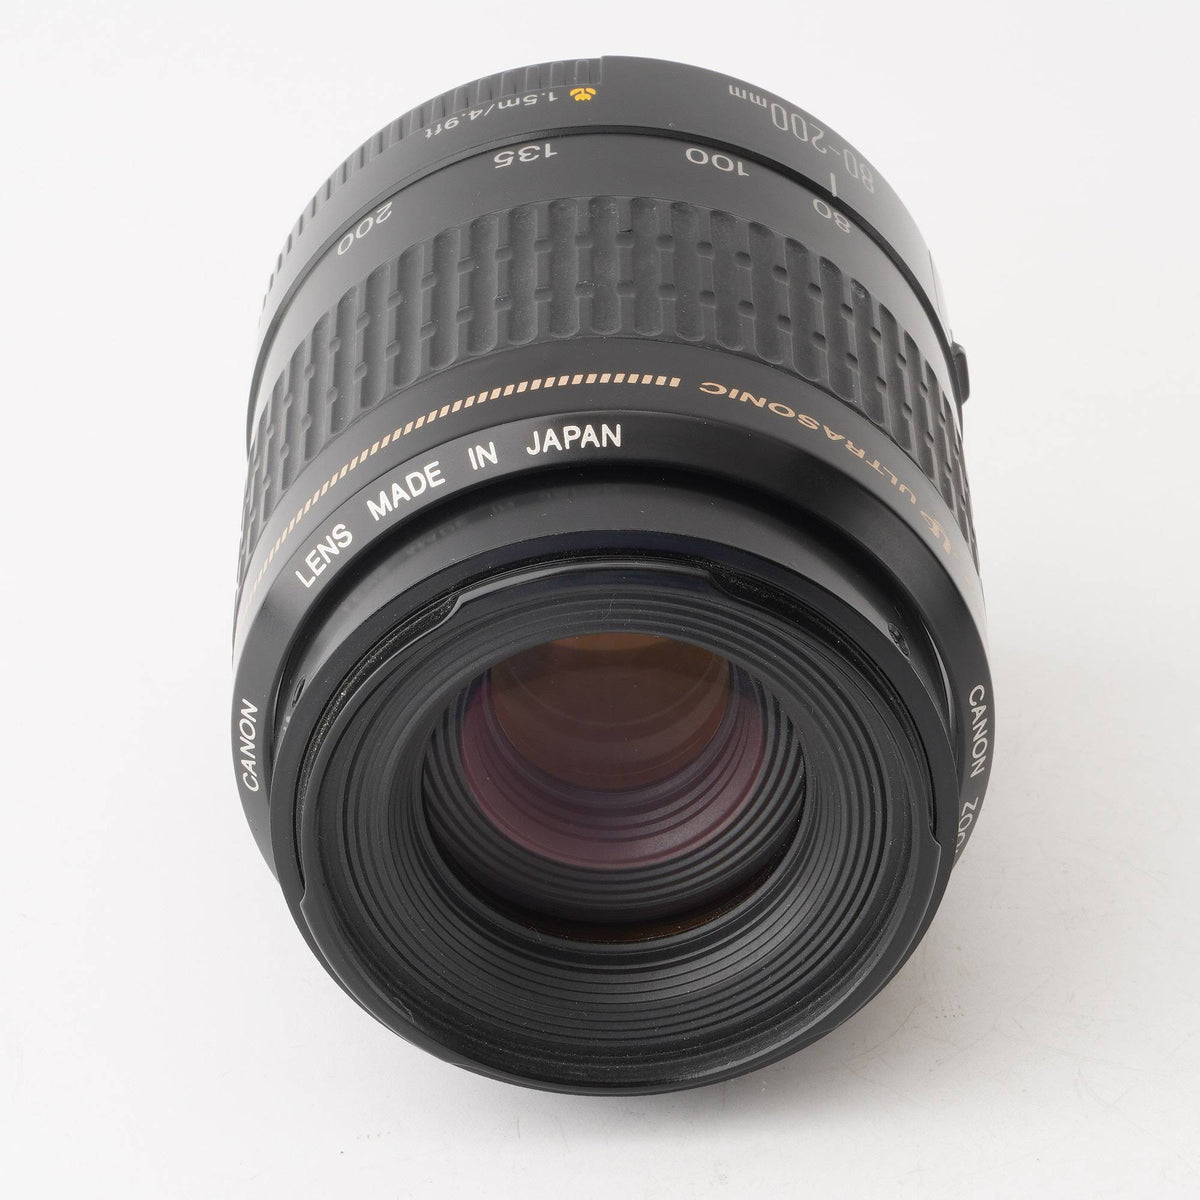 キヤノン Canon EF 80-200mm F4.5-5.6 USM